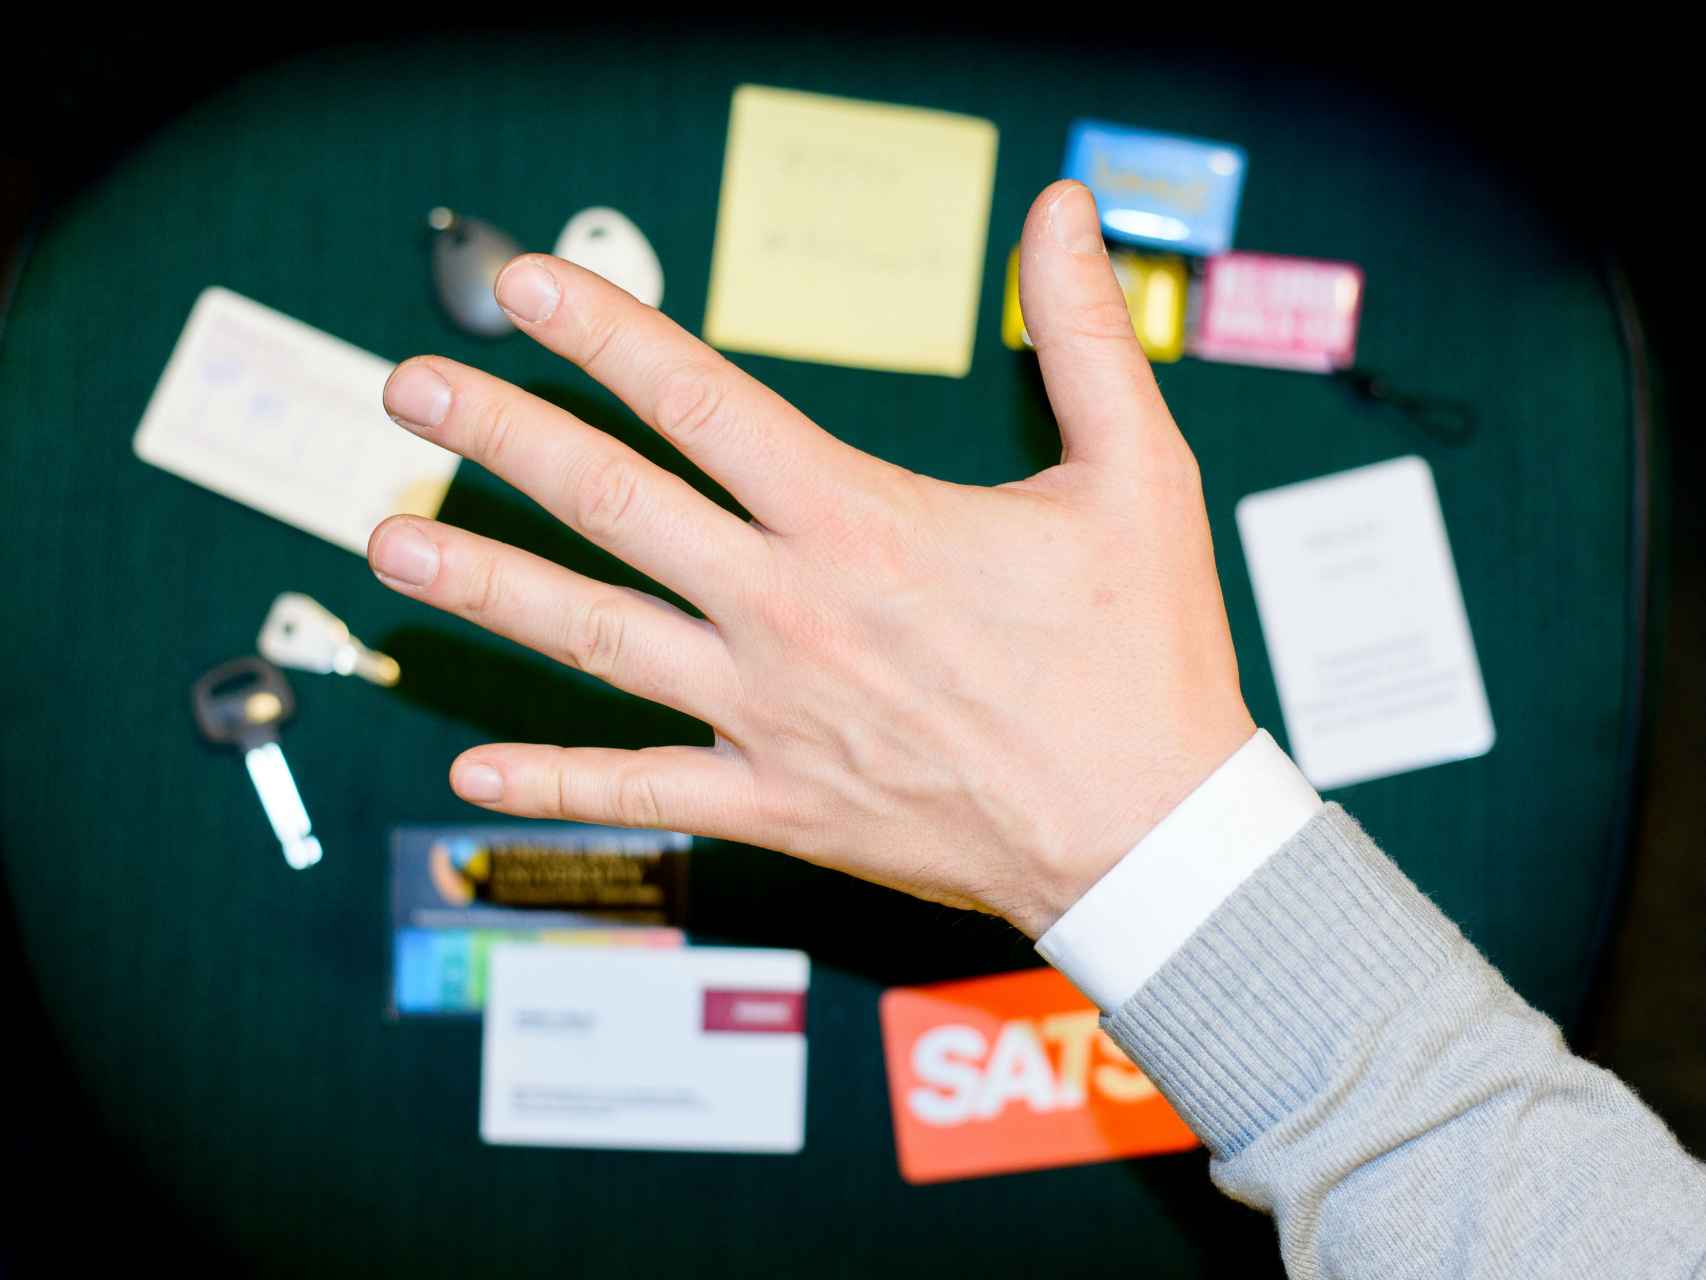 Hannes controla con su mano varios procesos de su oficina.